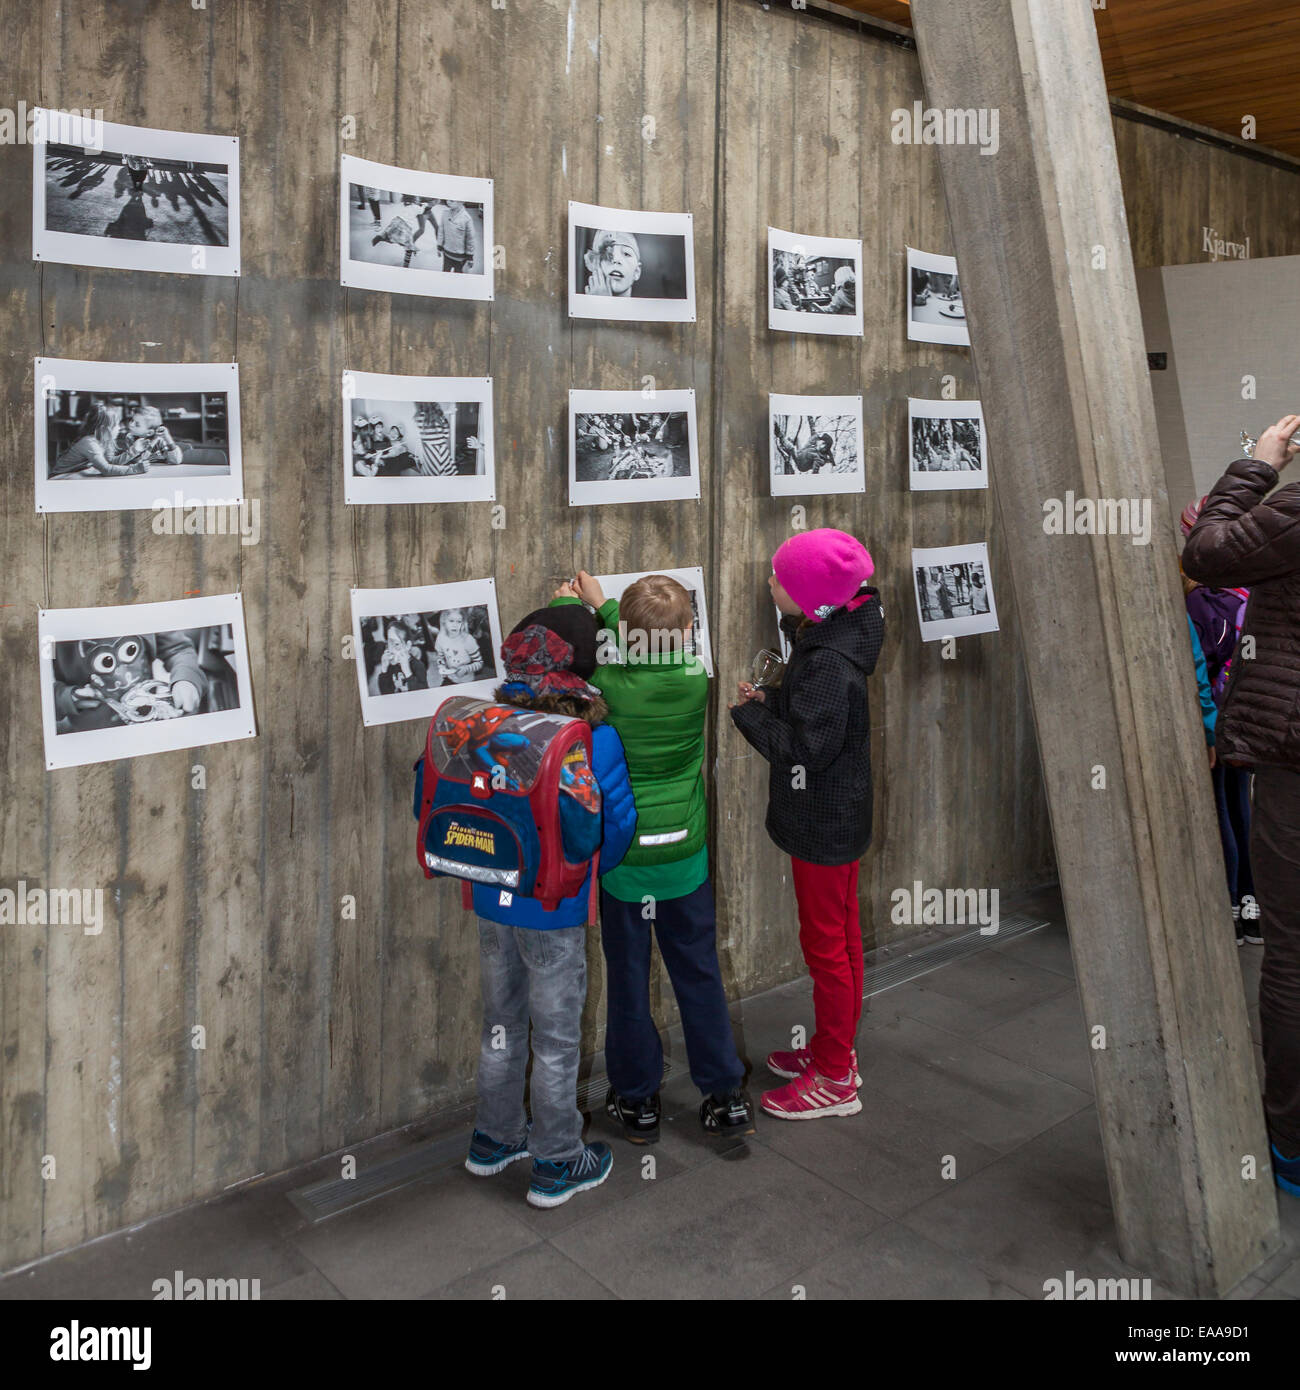 Les enfants à une exposition de photos, regarder des images d'eux-mêmes. Reykjavik, Islande Banque D'Images